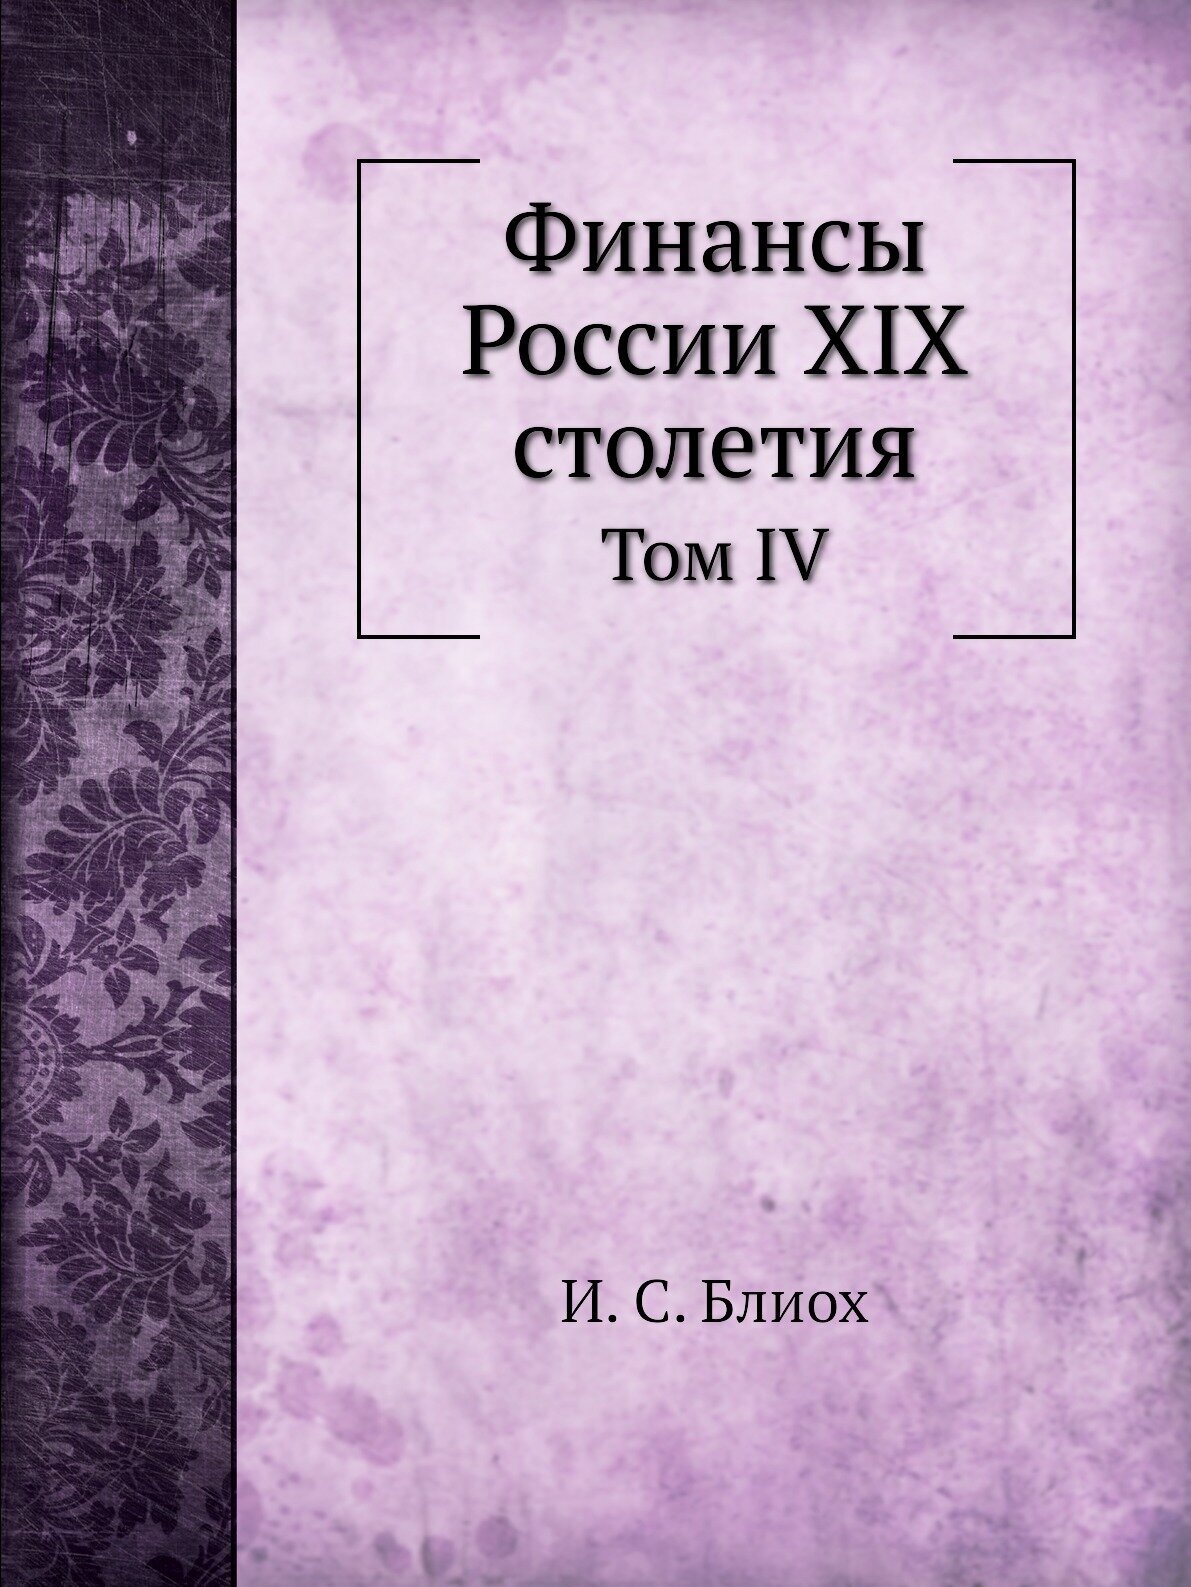 Финансы России XIX столетия. Том IV